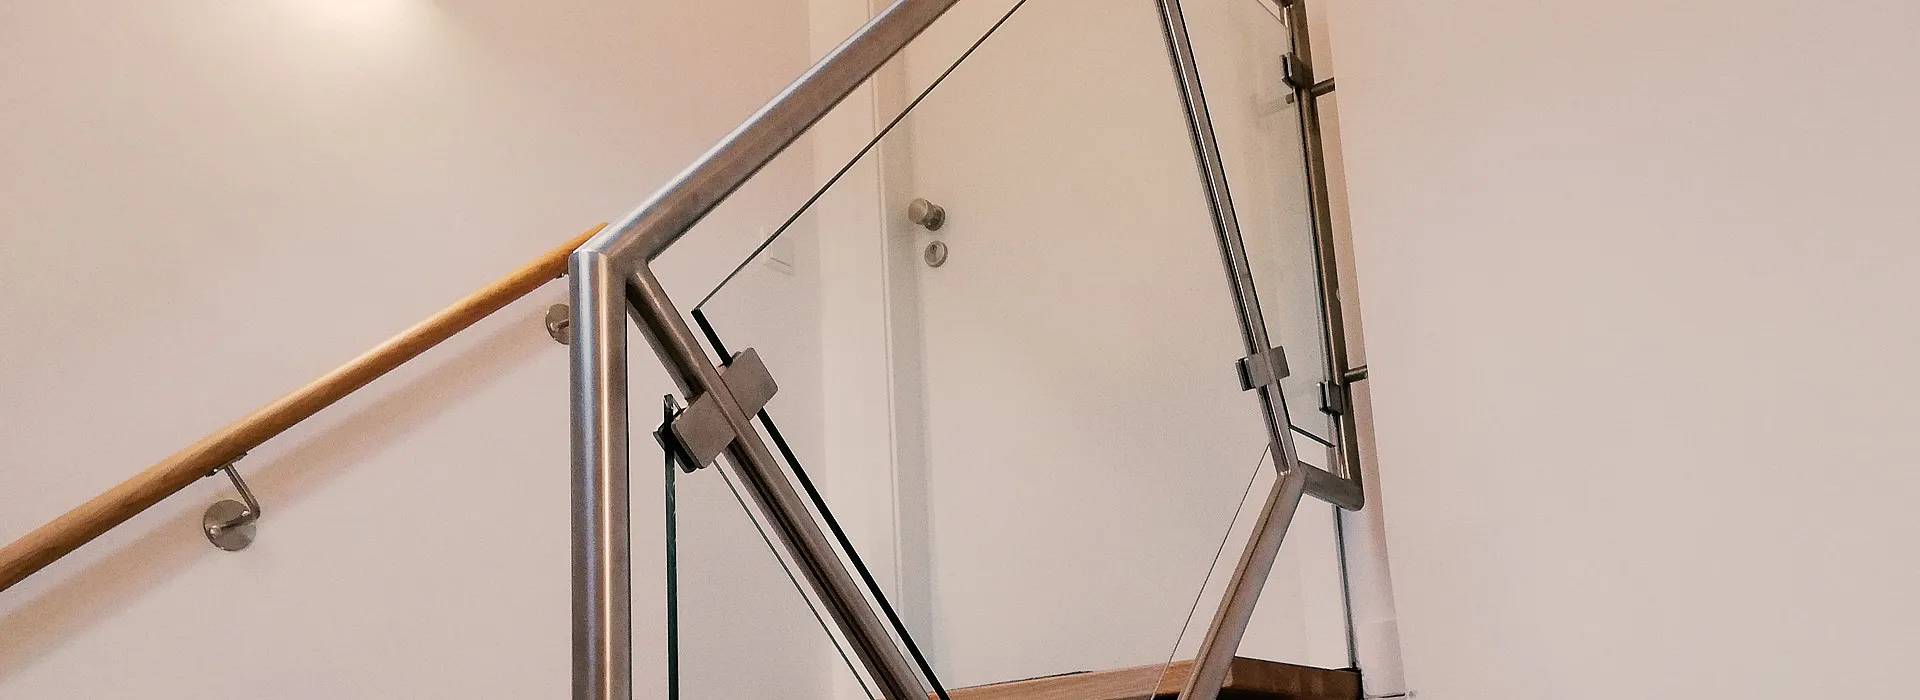 Geländer im Treppenhaus aus Glaselementen und Edelstahl, Handlauf aus Edelstahl